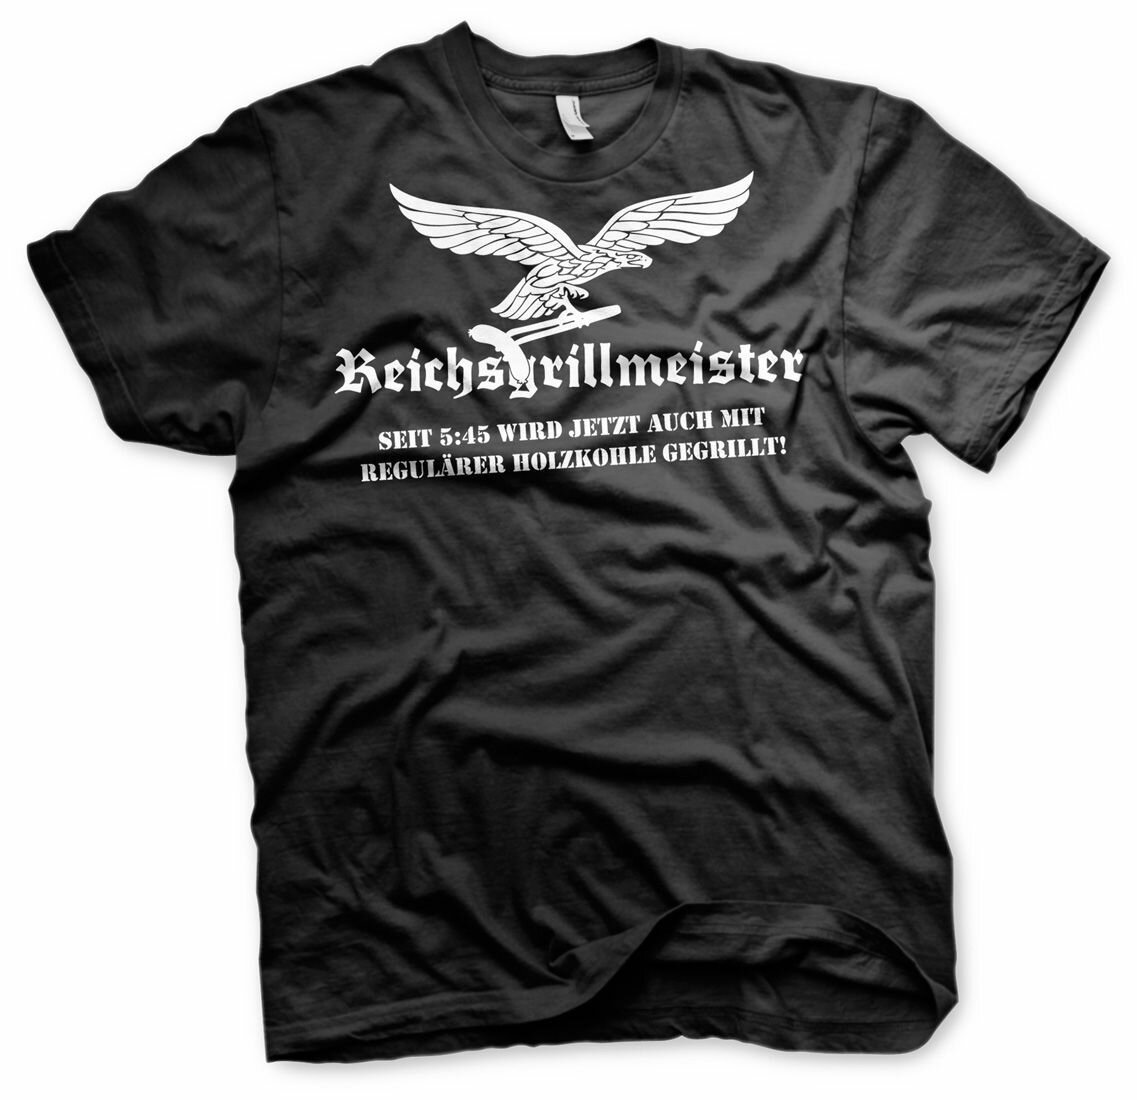 Reichsgrillmeister Schürze Grillshirt € -Tshirt 16,90 G, 2 Barbeque Kugelgrill